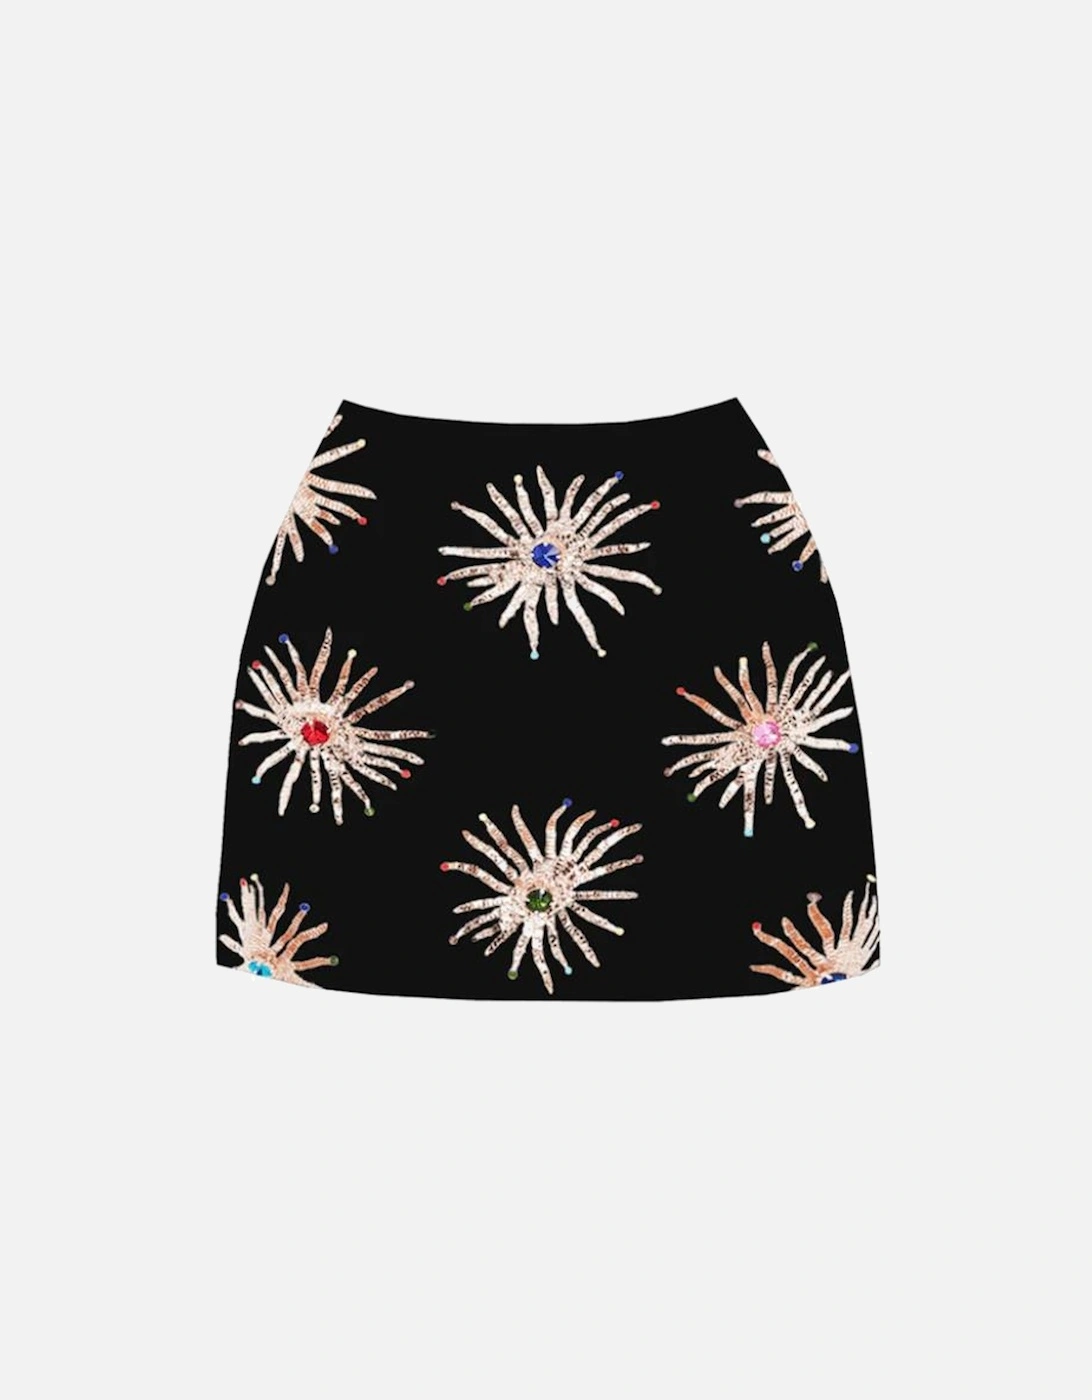 Oceanus Women's Callie Co-ord Skirt Black - Size: 18/16/16/None product